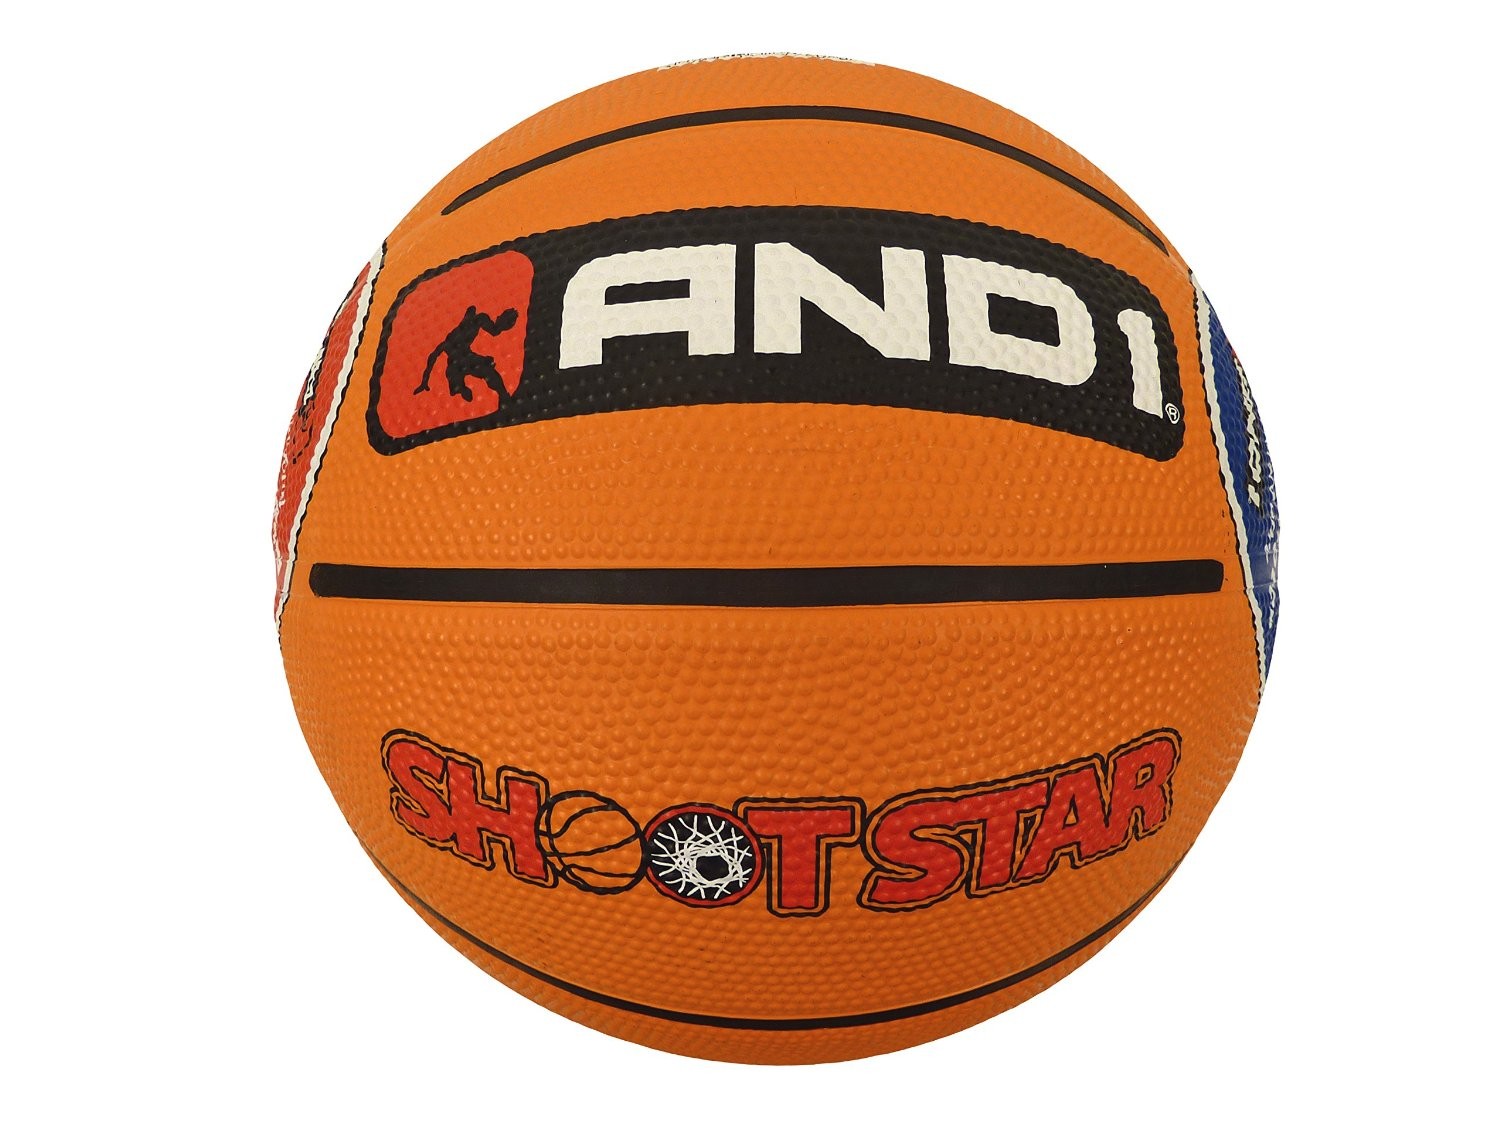 AND1 Shoot Star Баскетбольный мяч для Тренировок